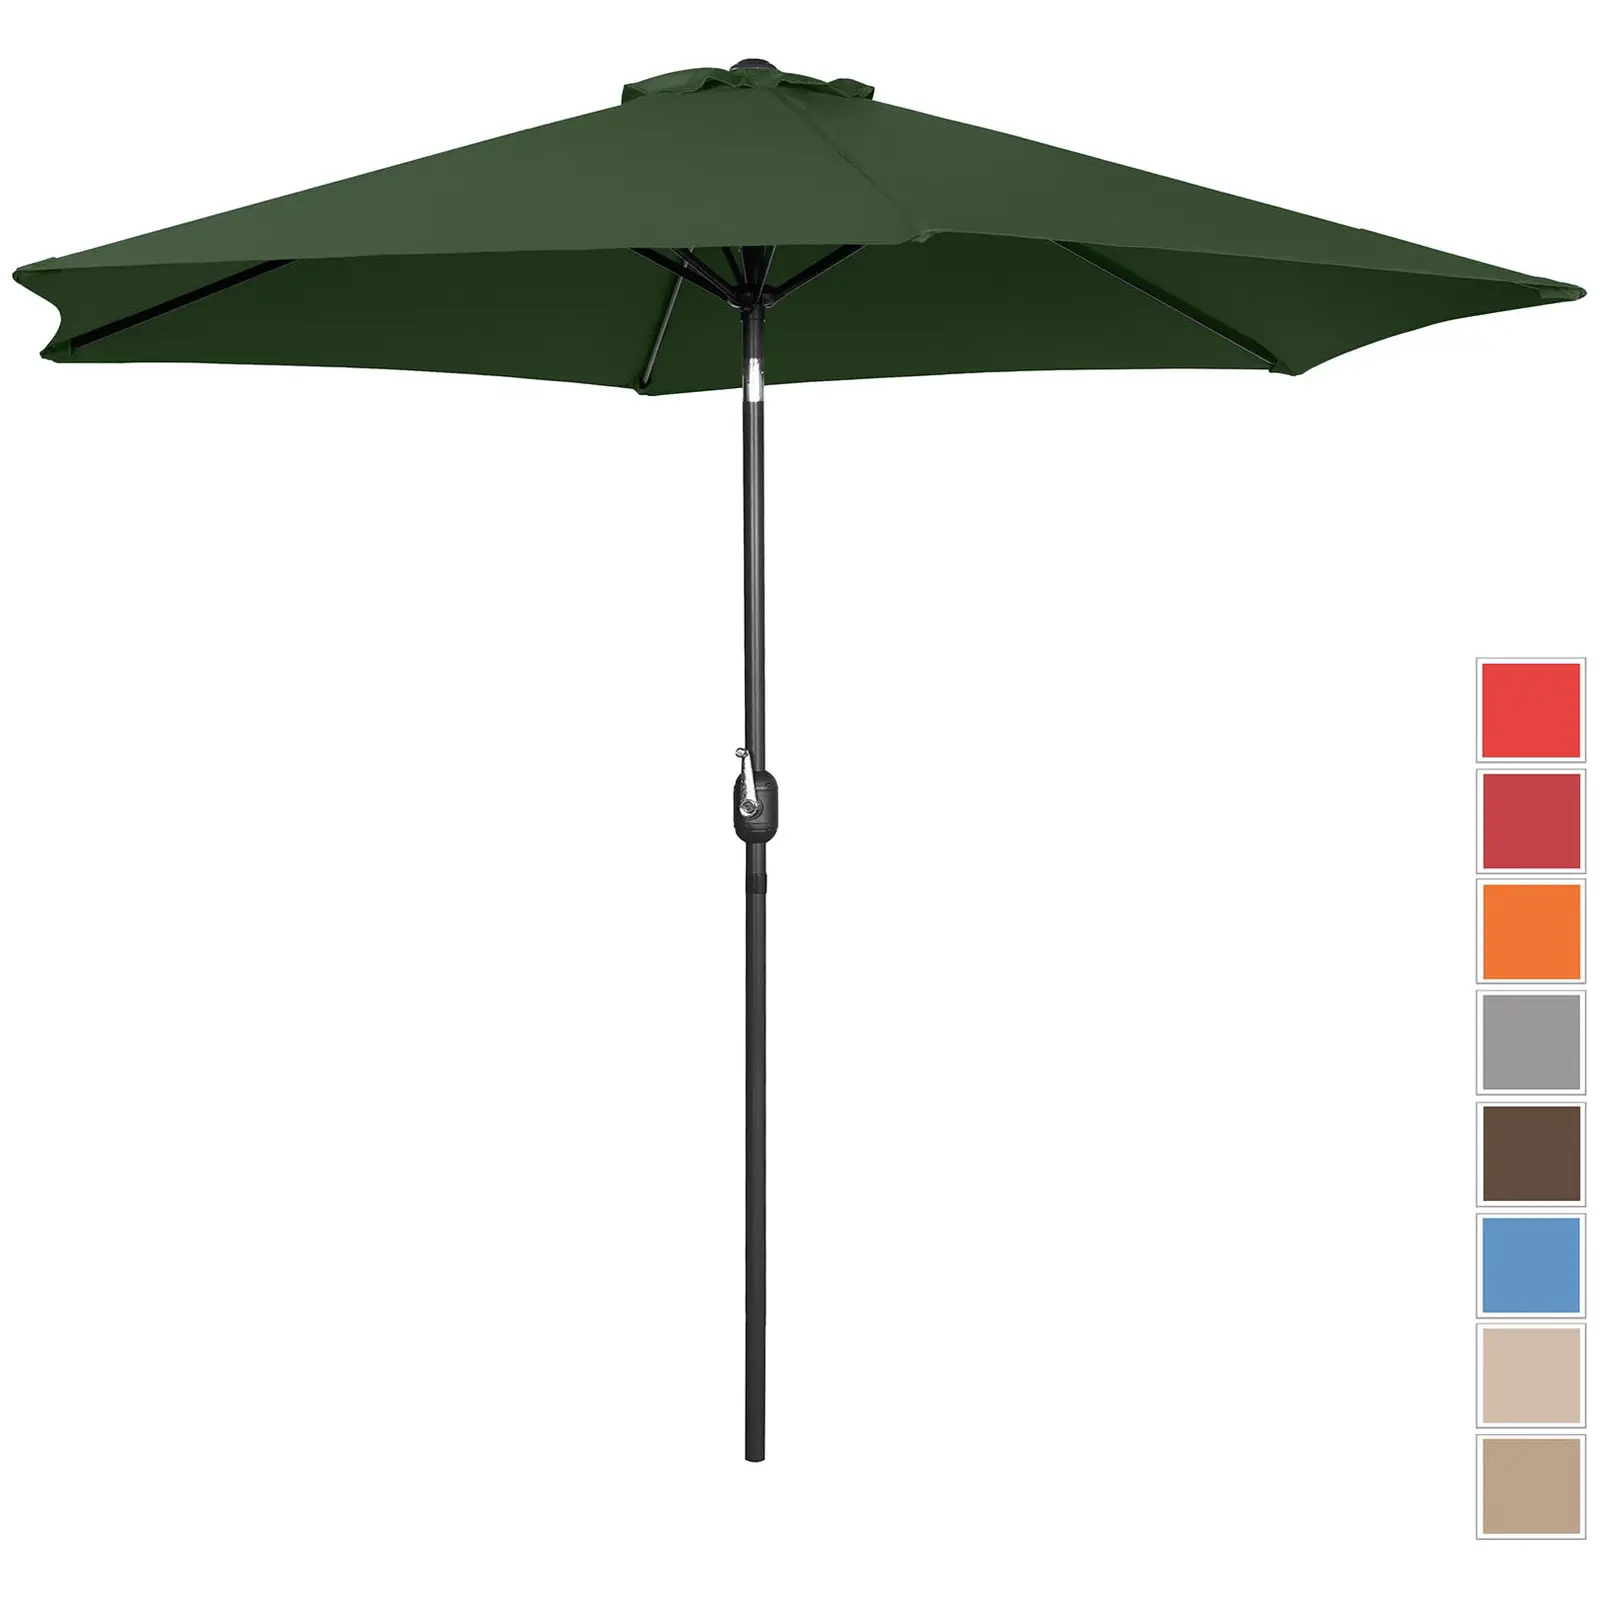 Ομπρέλα εξωτερικού χώρου - πράσινη - εξαγωνική - Ø 300 cm - ανακλινόμενη